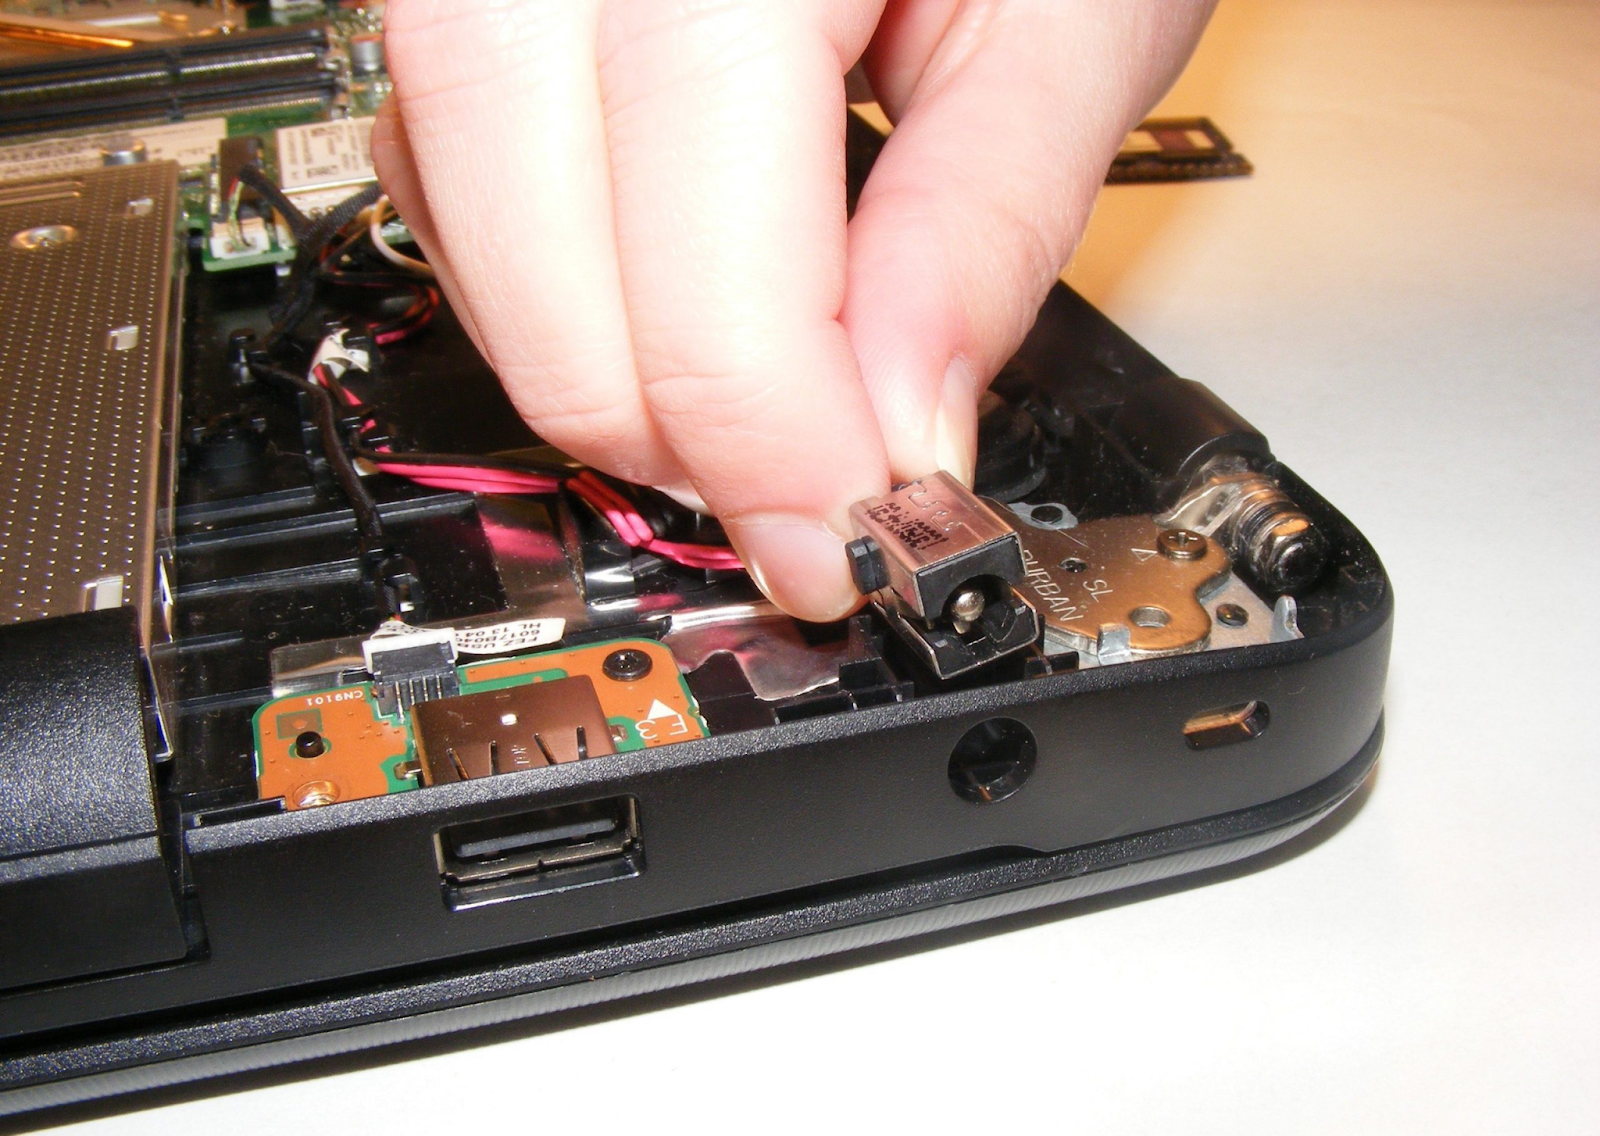 Cắm sạc laptop bị tóe lửa - Nguyên nhân và biện pháp phòng ngừa